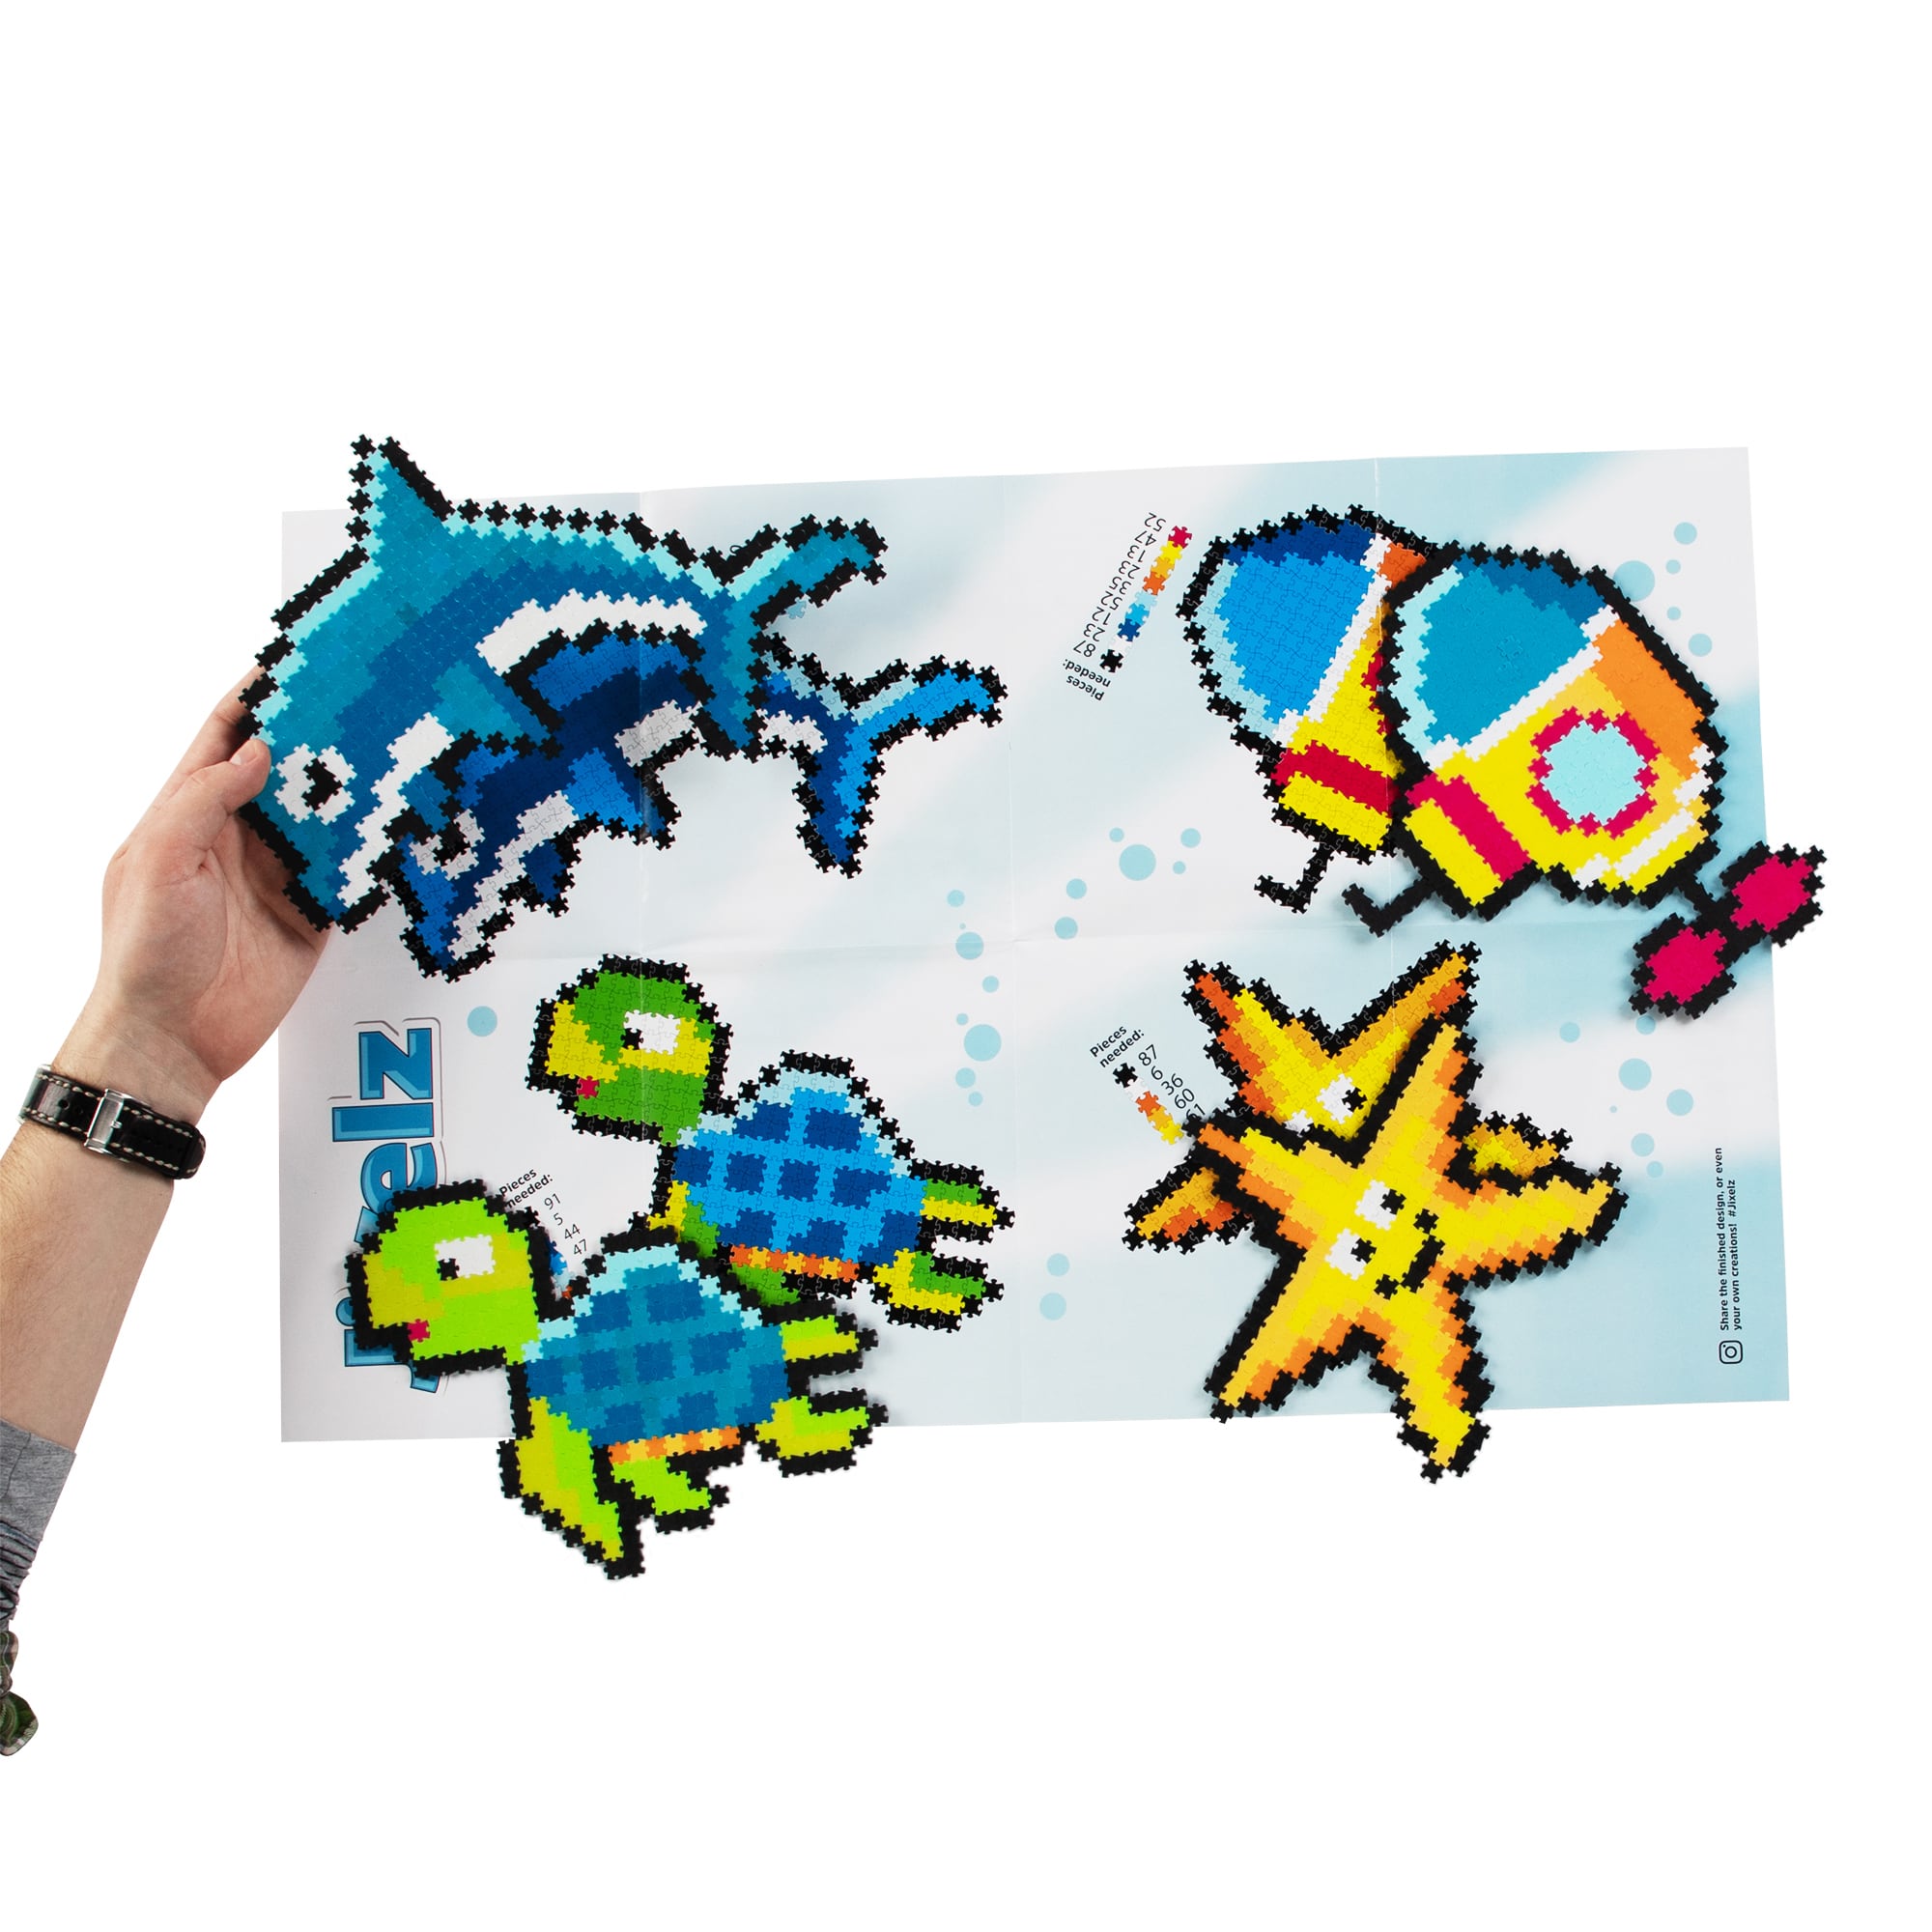 morski zestaw puzzelków pixelków #wariant_pod wodą